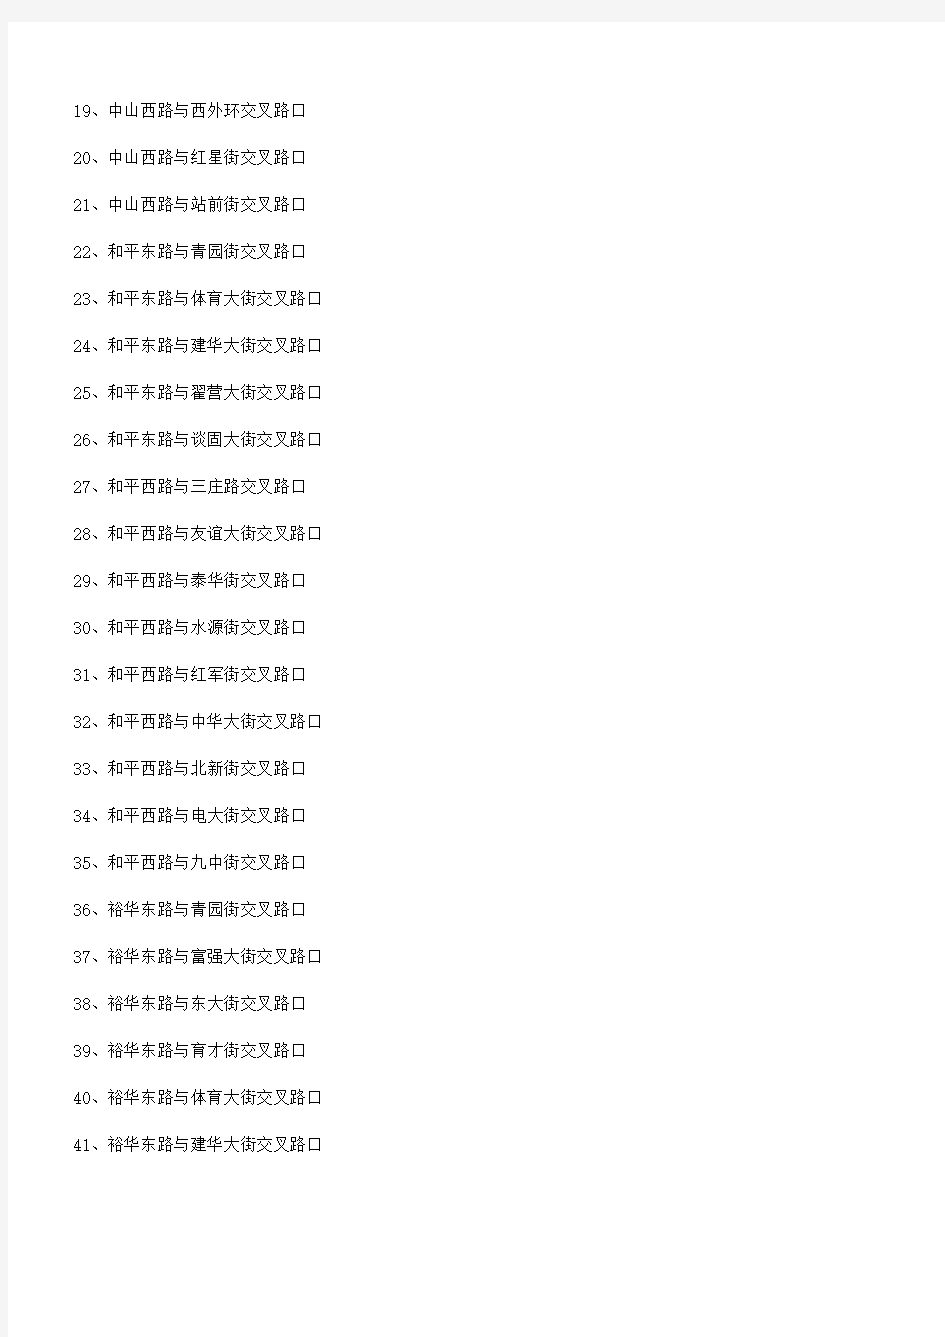 石家庄市区最新电子警察分布列表,强烈推荐